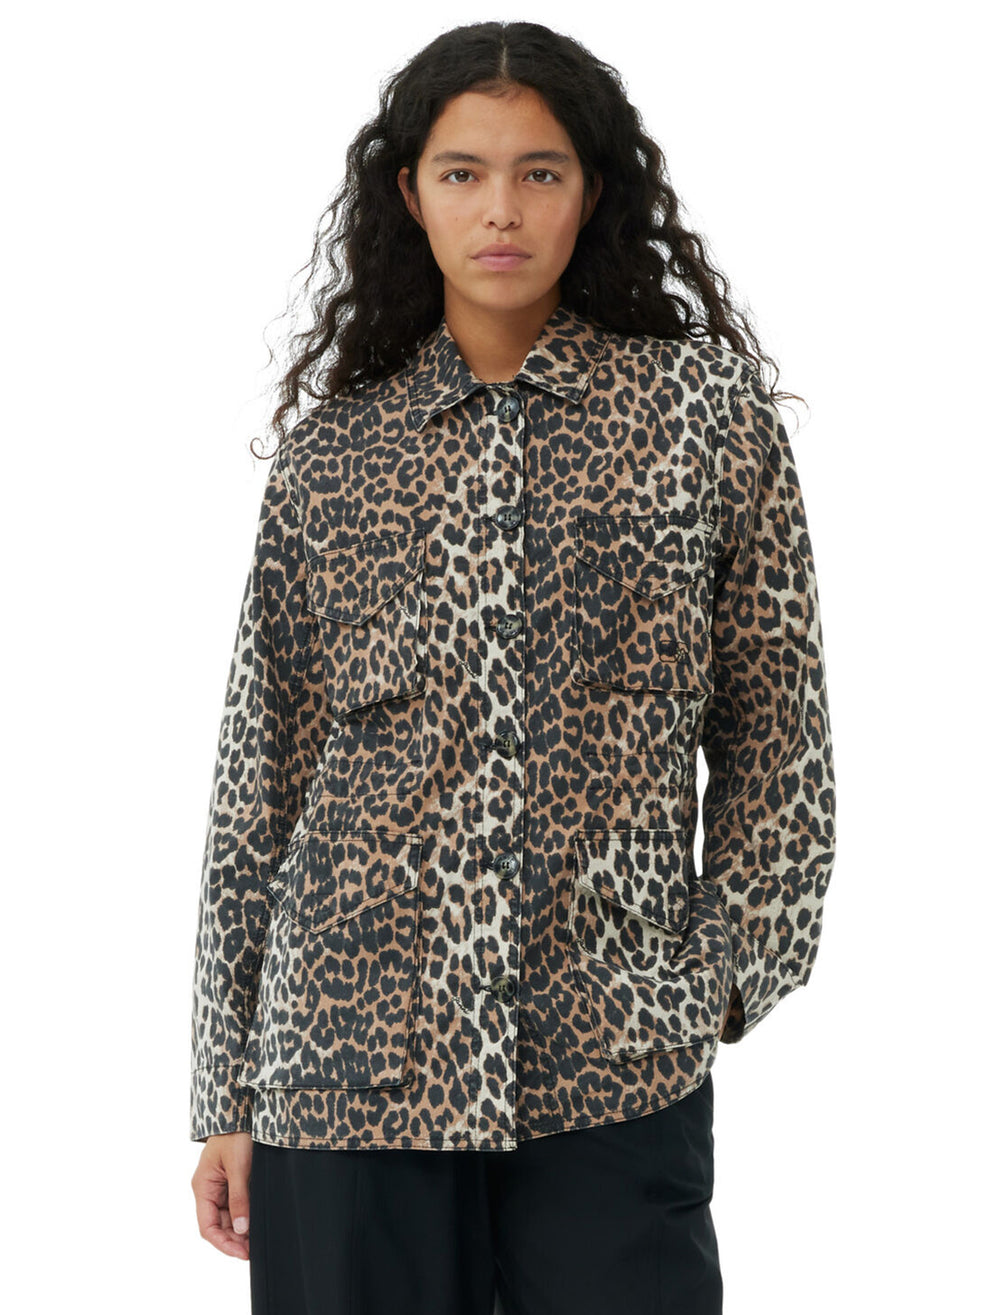 Model wearing GANNI's cotton canvas jacket in almond milk leopard.